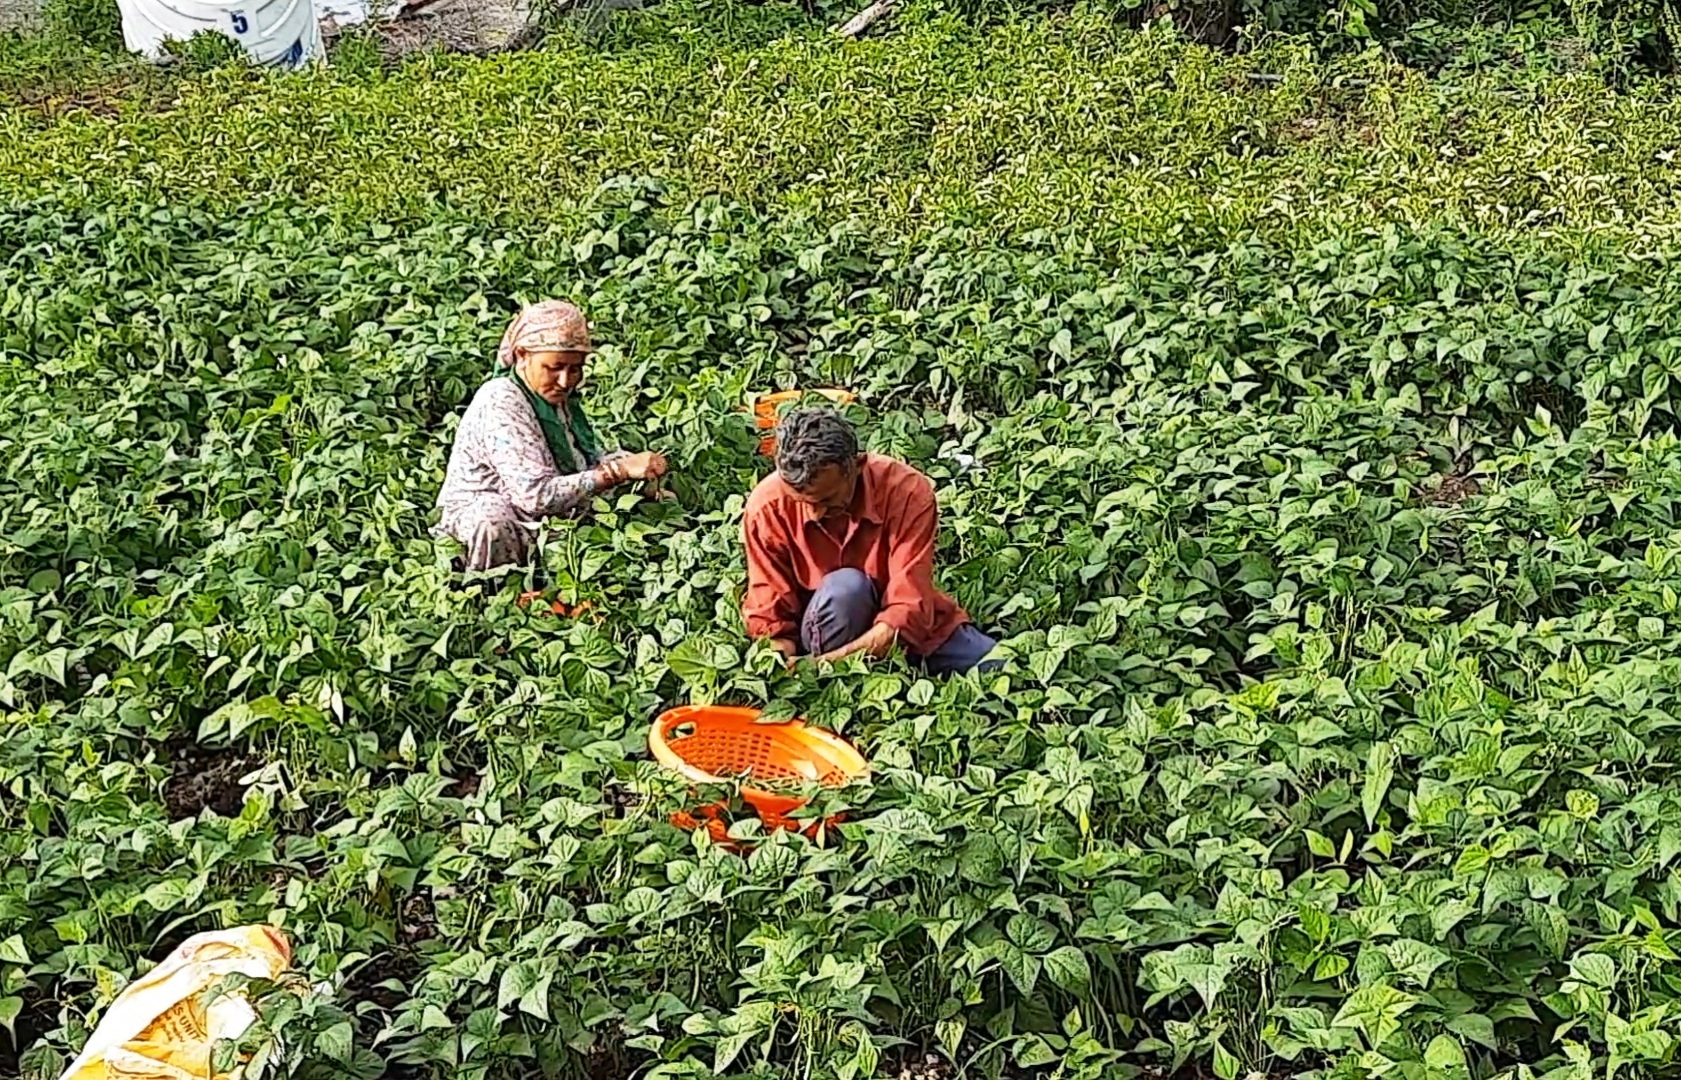 Women farmers in Himachal